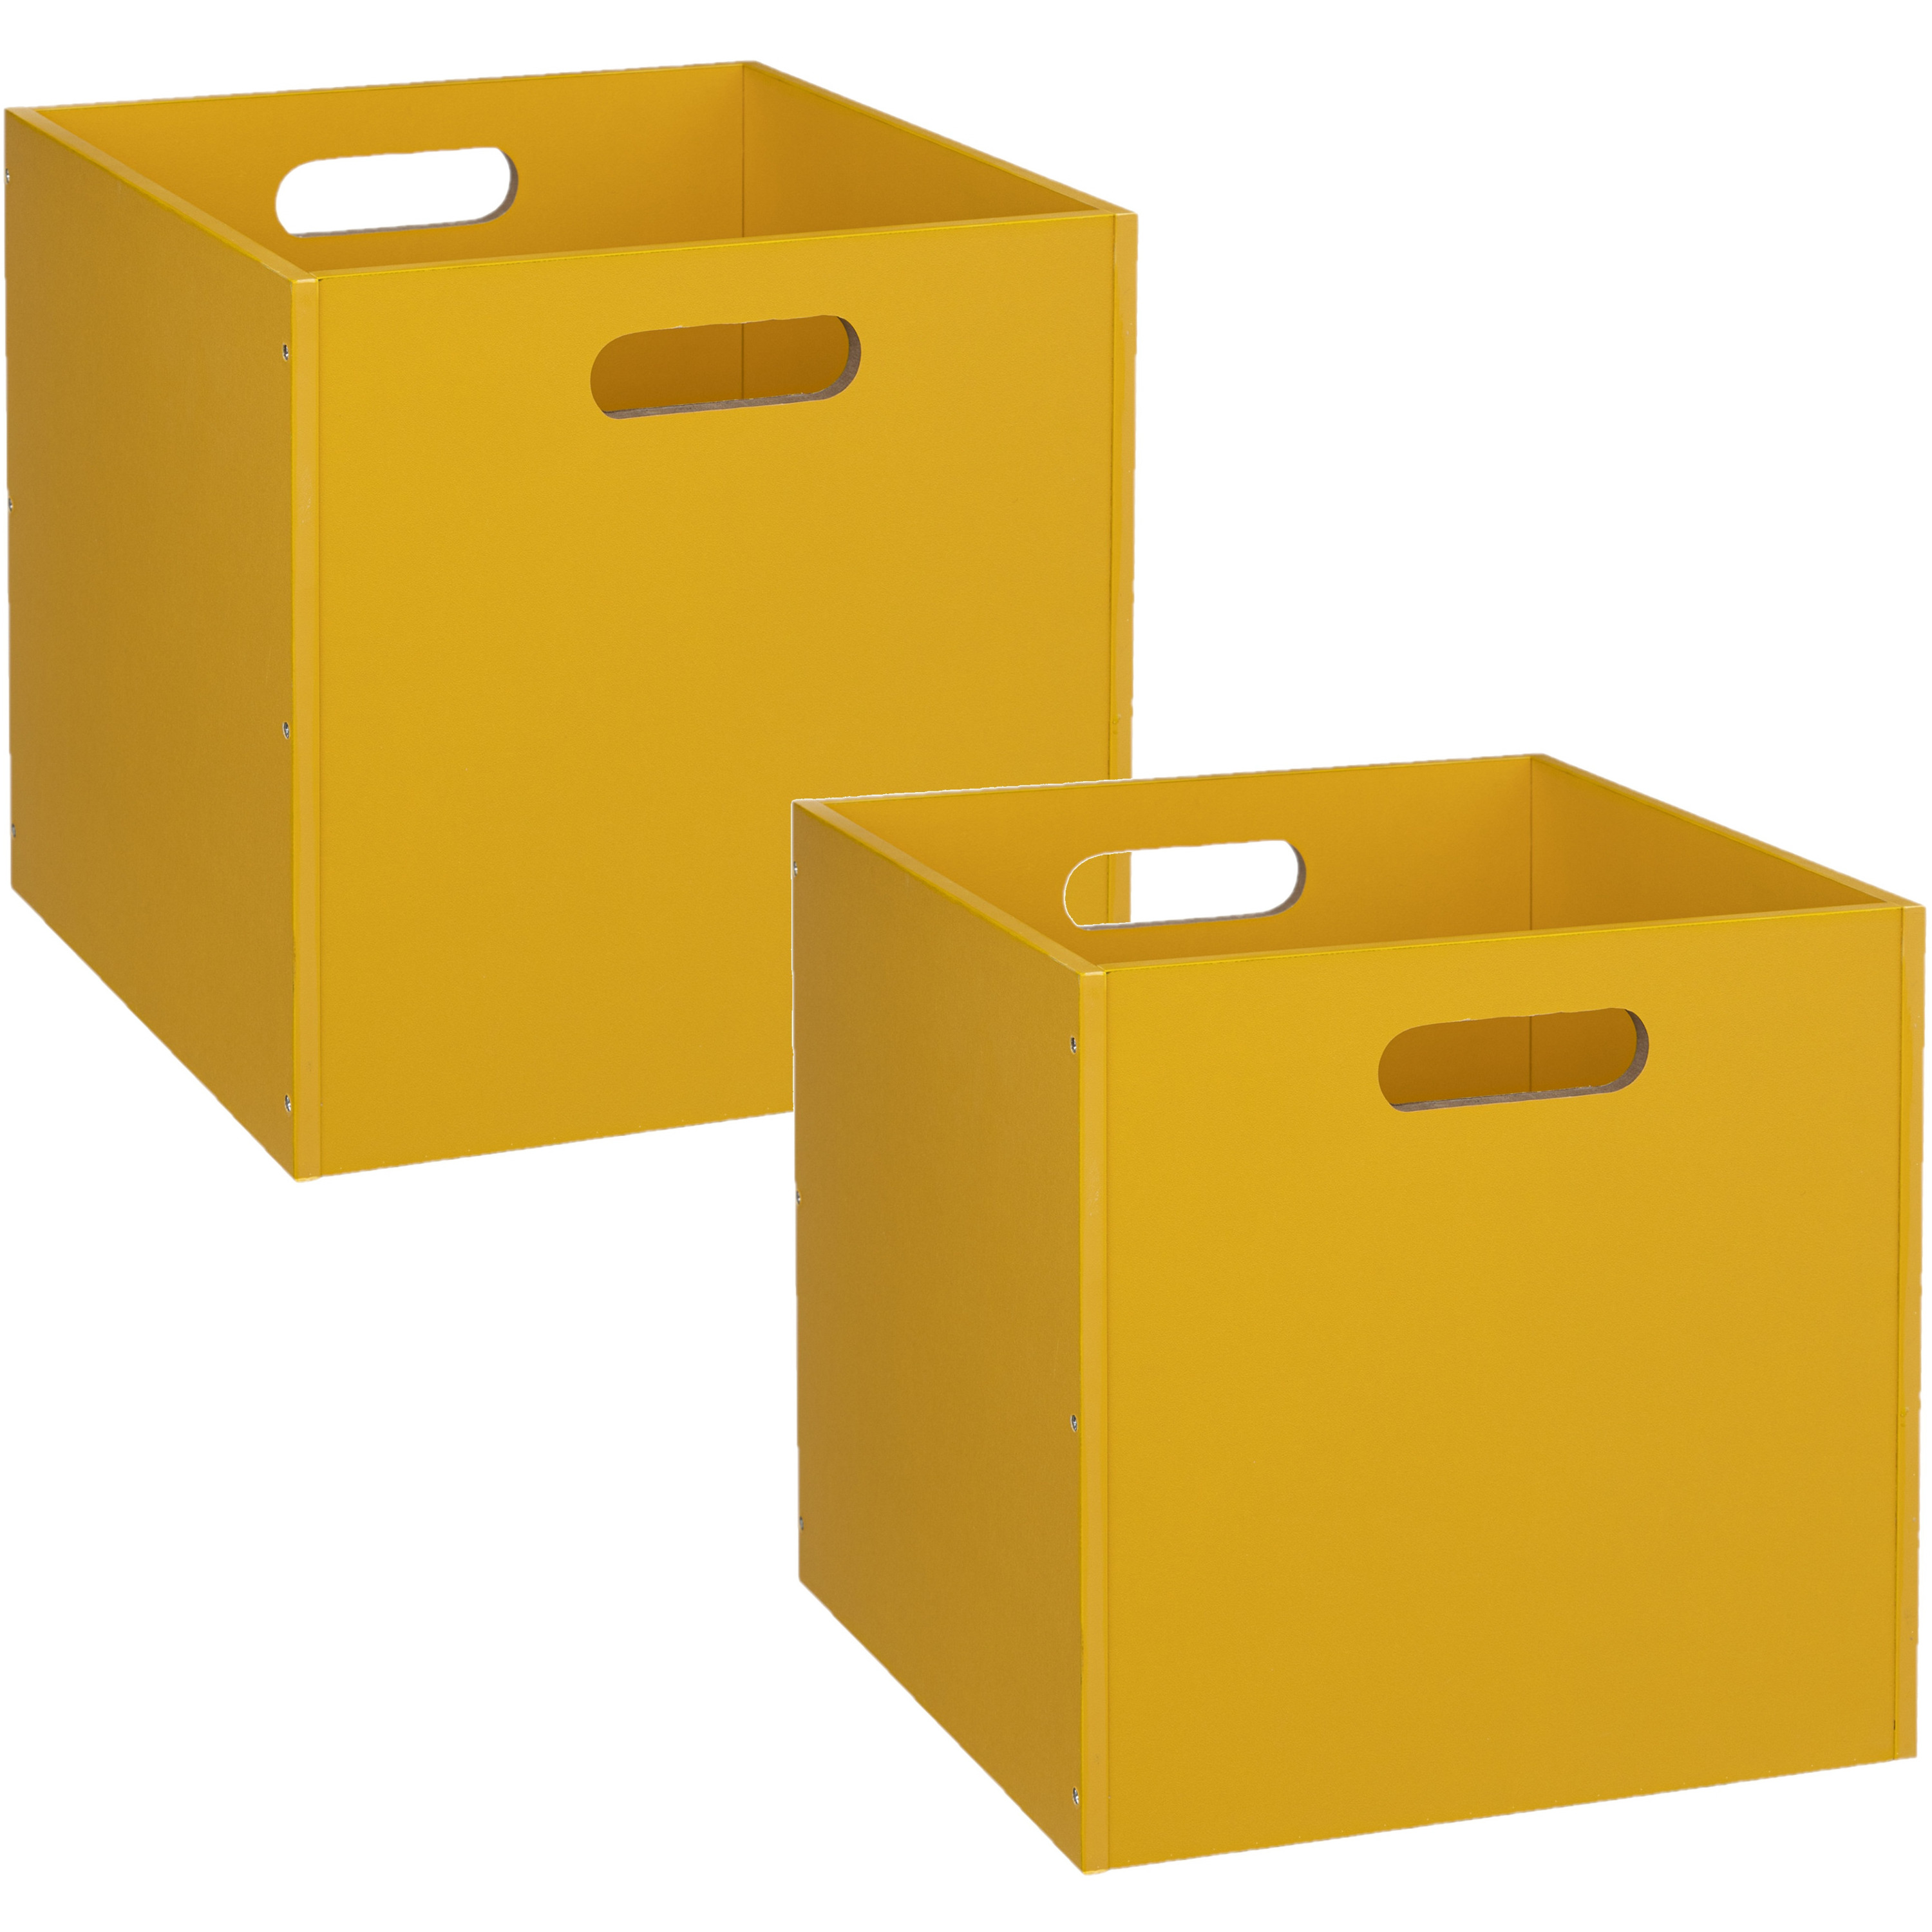 2x Stuks opbergmand/kastmand 29 liter geel van hout 31 x 31 x 31 cm -